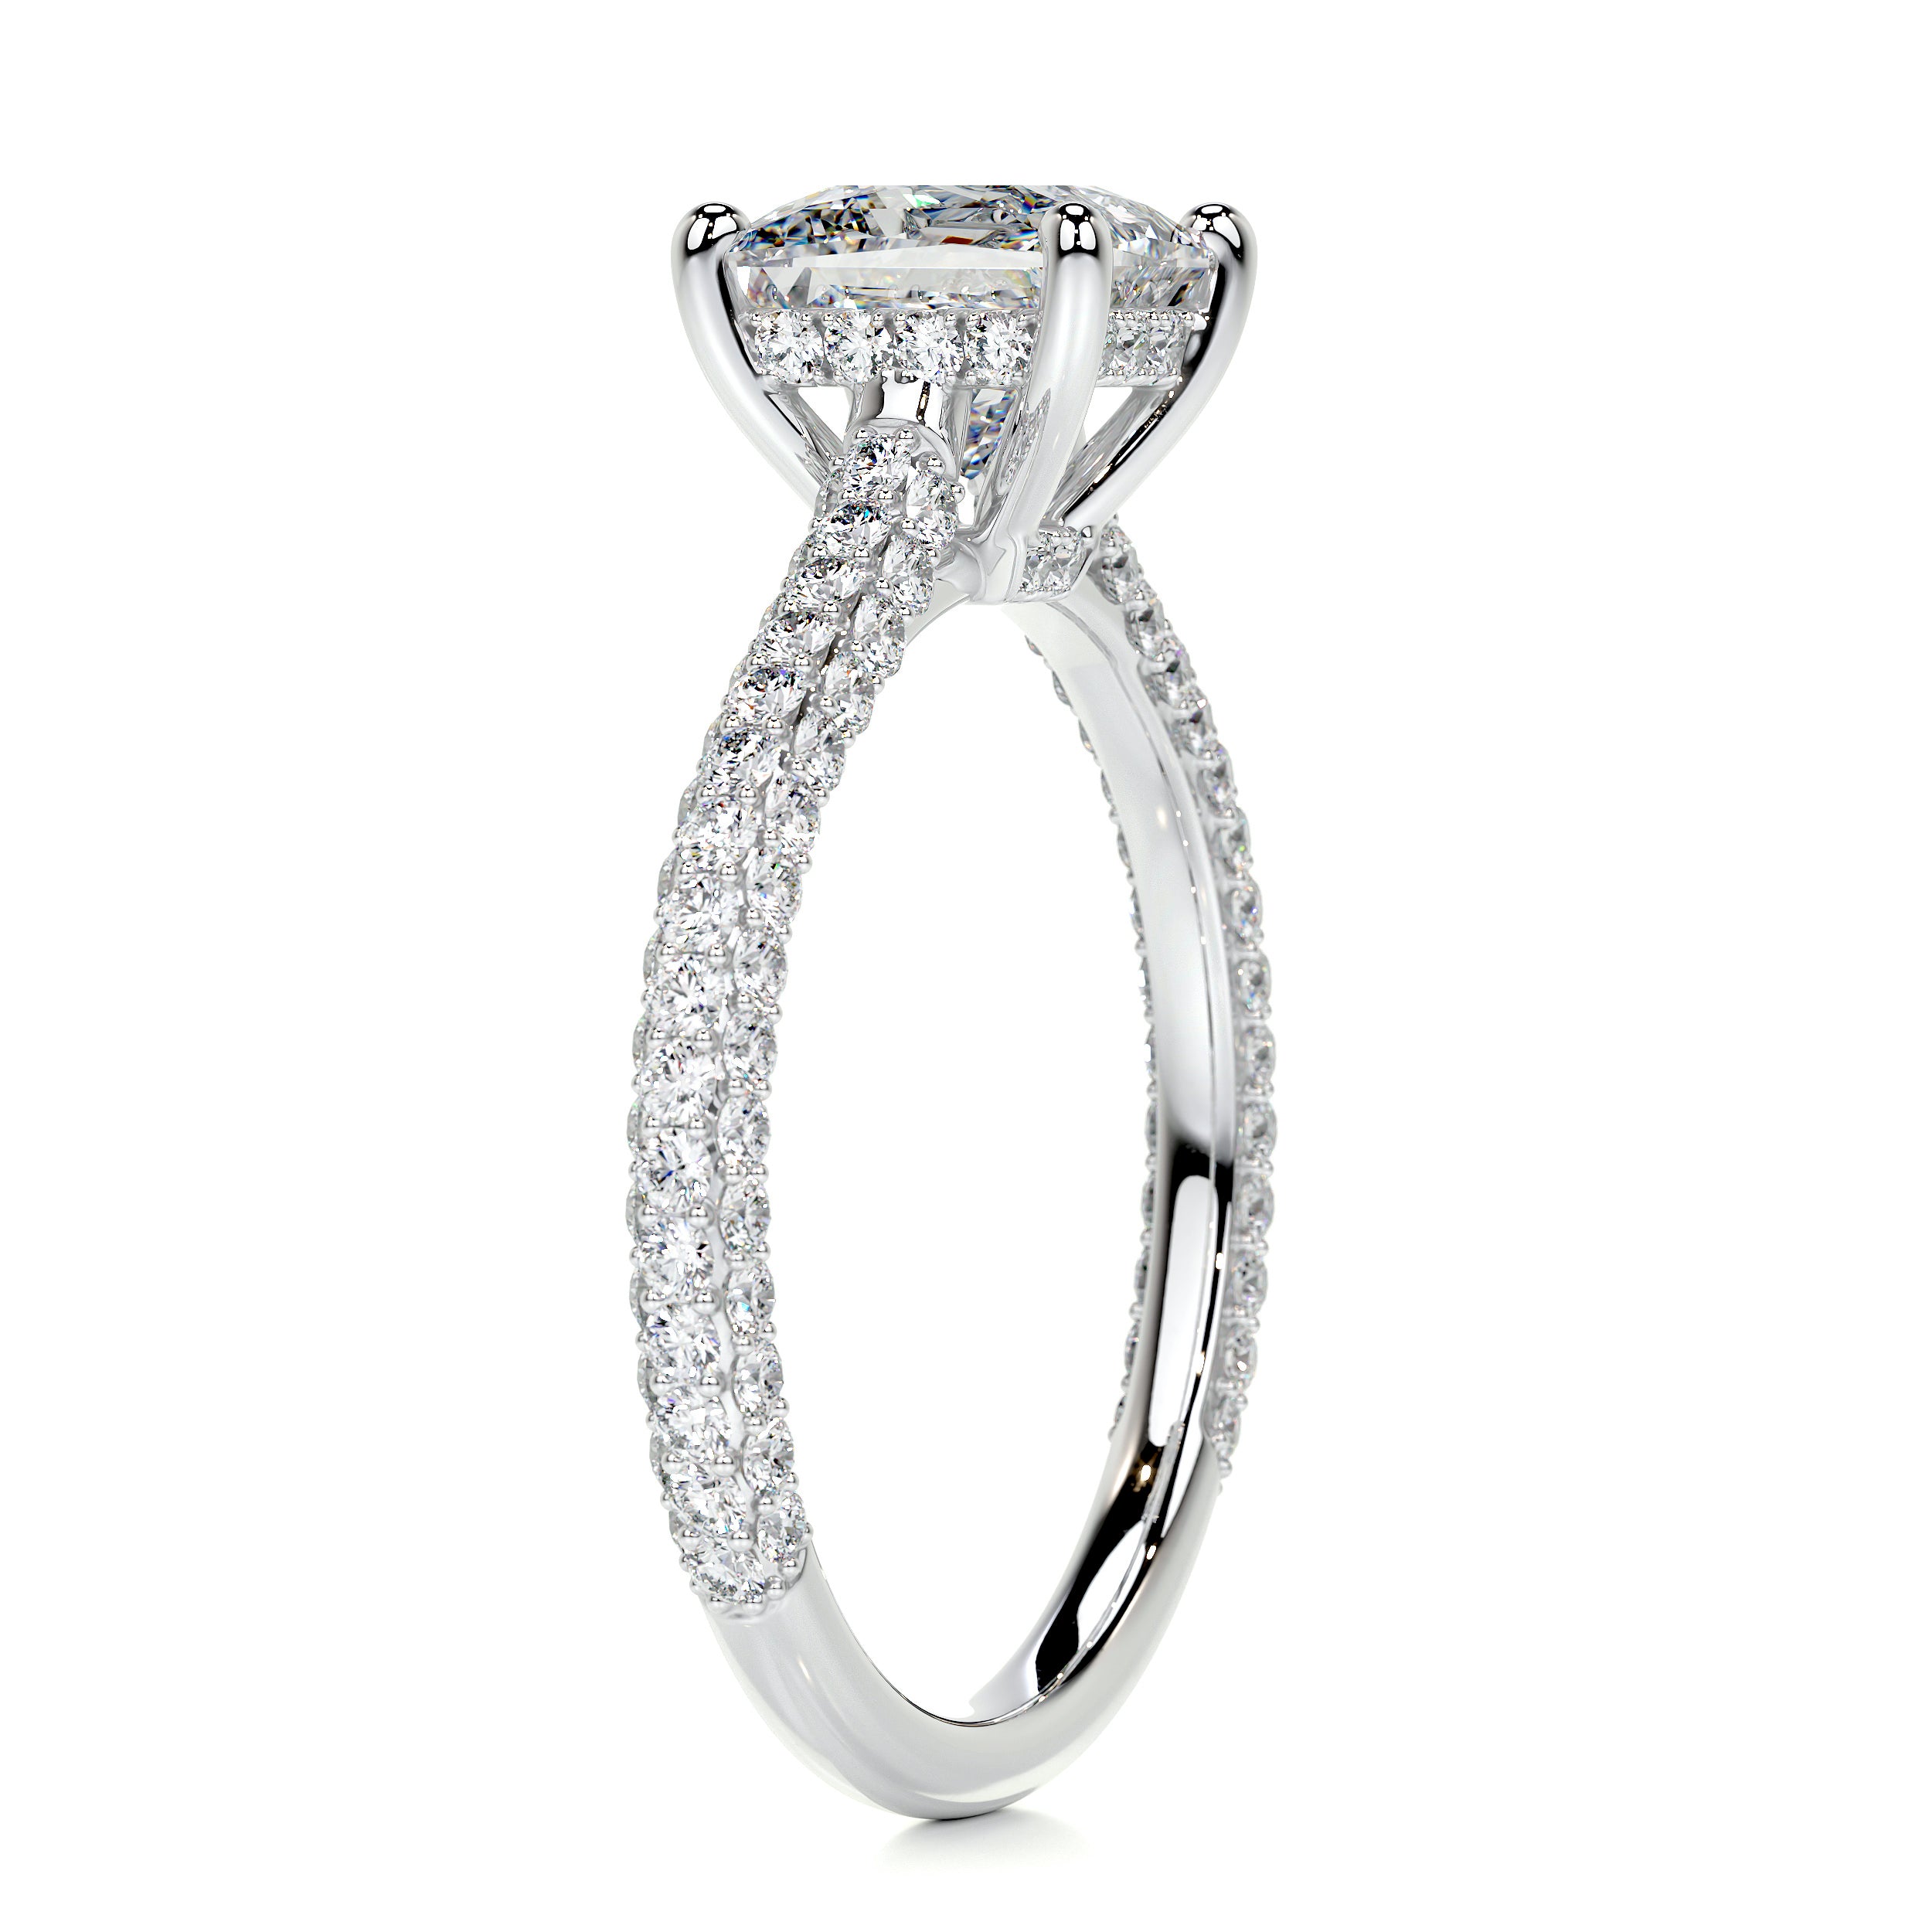 Fiona Diamond Engagement Ring   (2.50 Carat) -Platinum